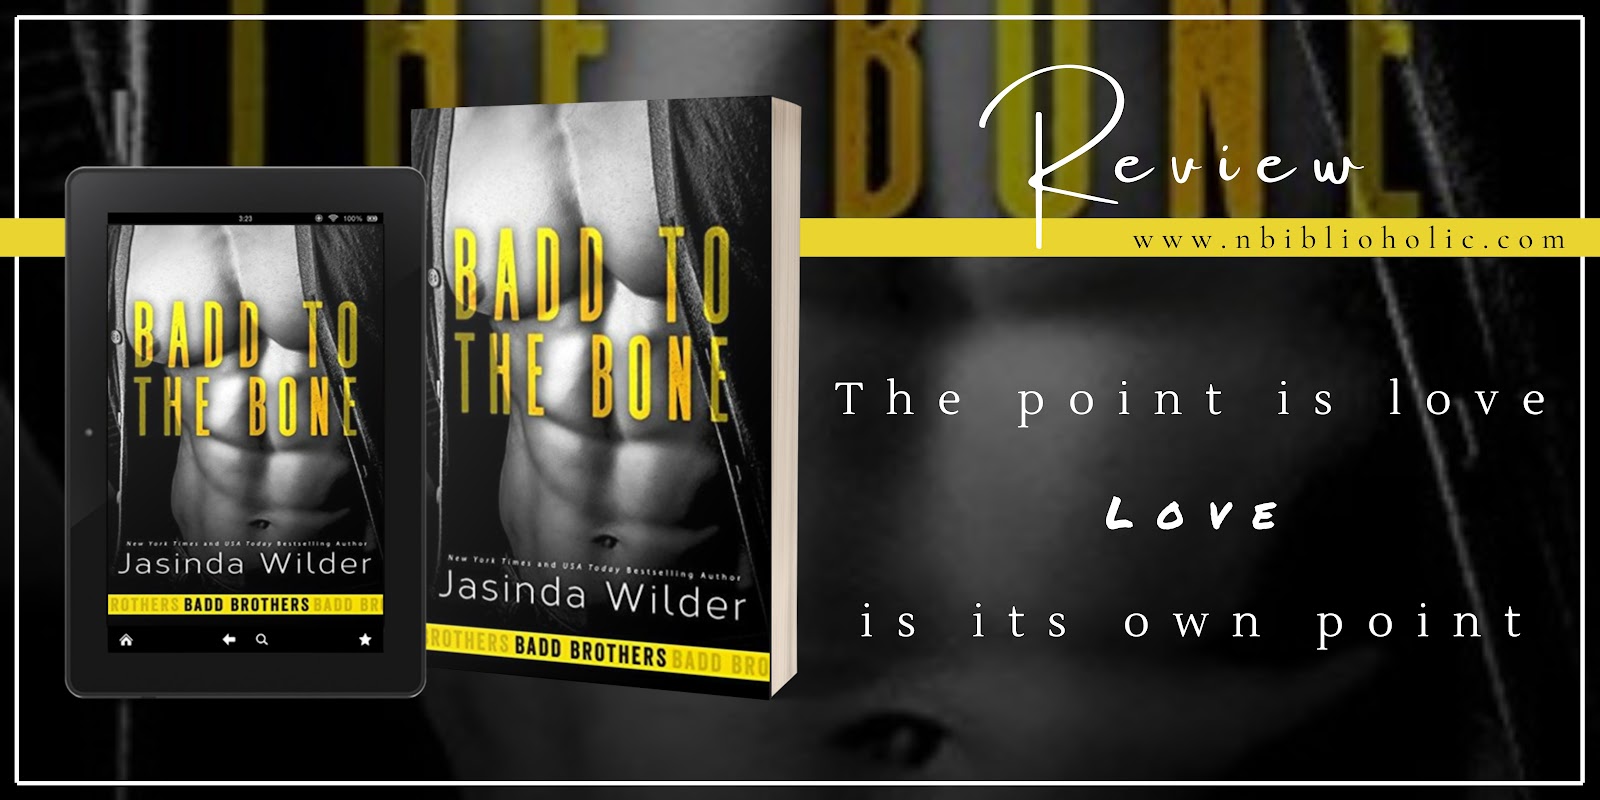 Badd to the Bone by Jasinda Wilder